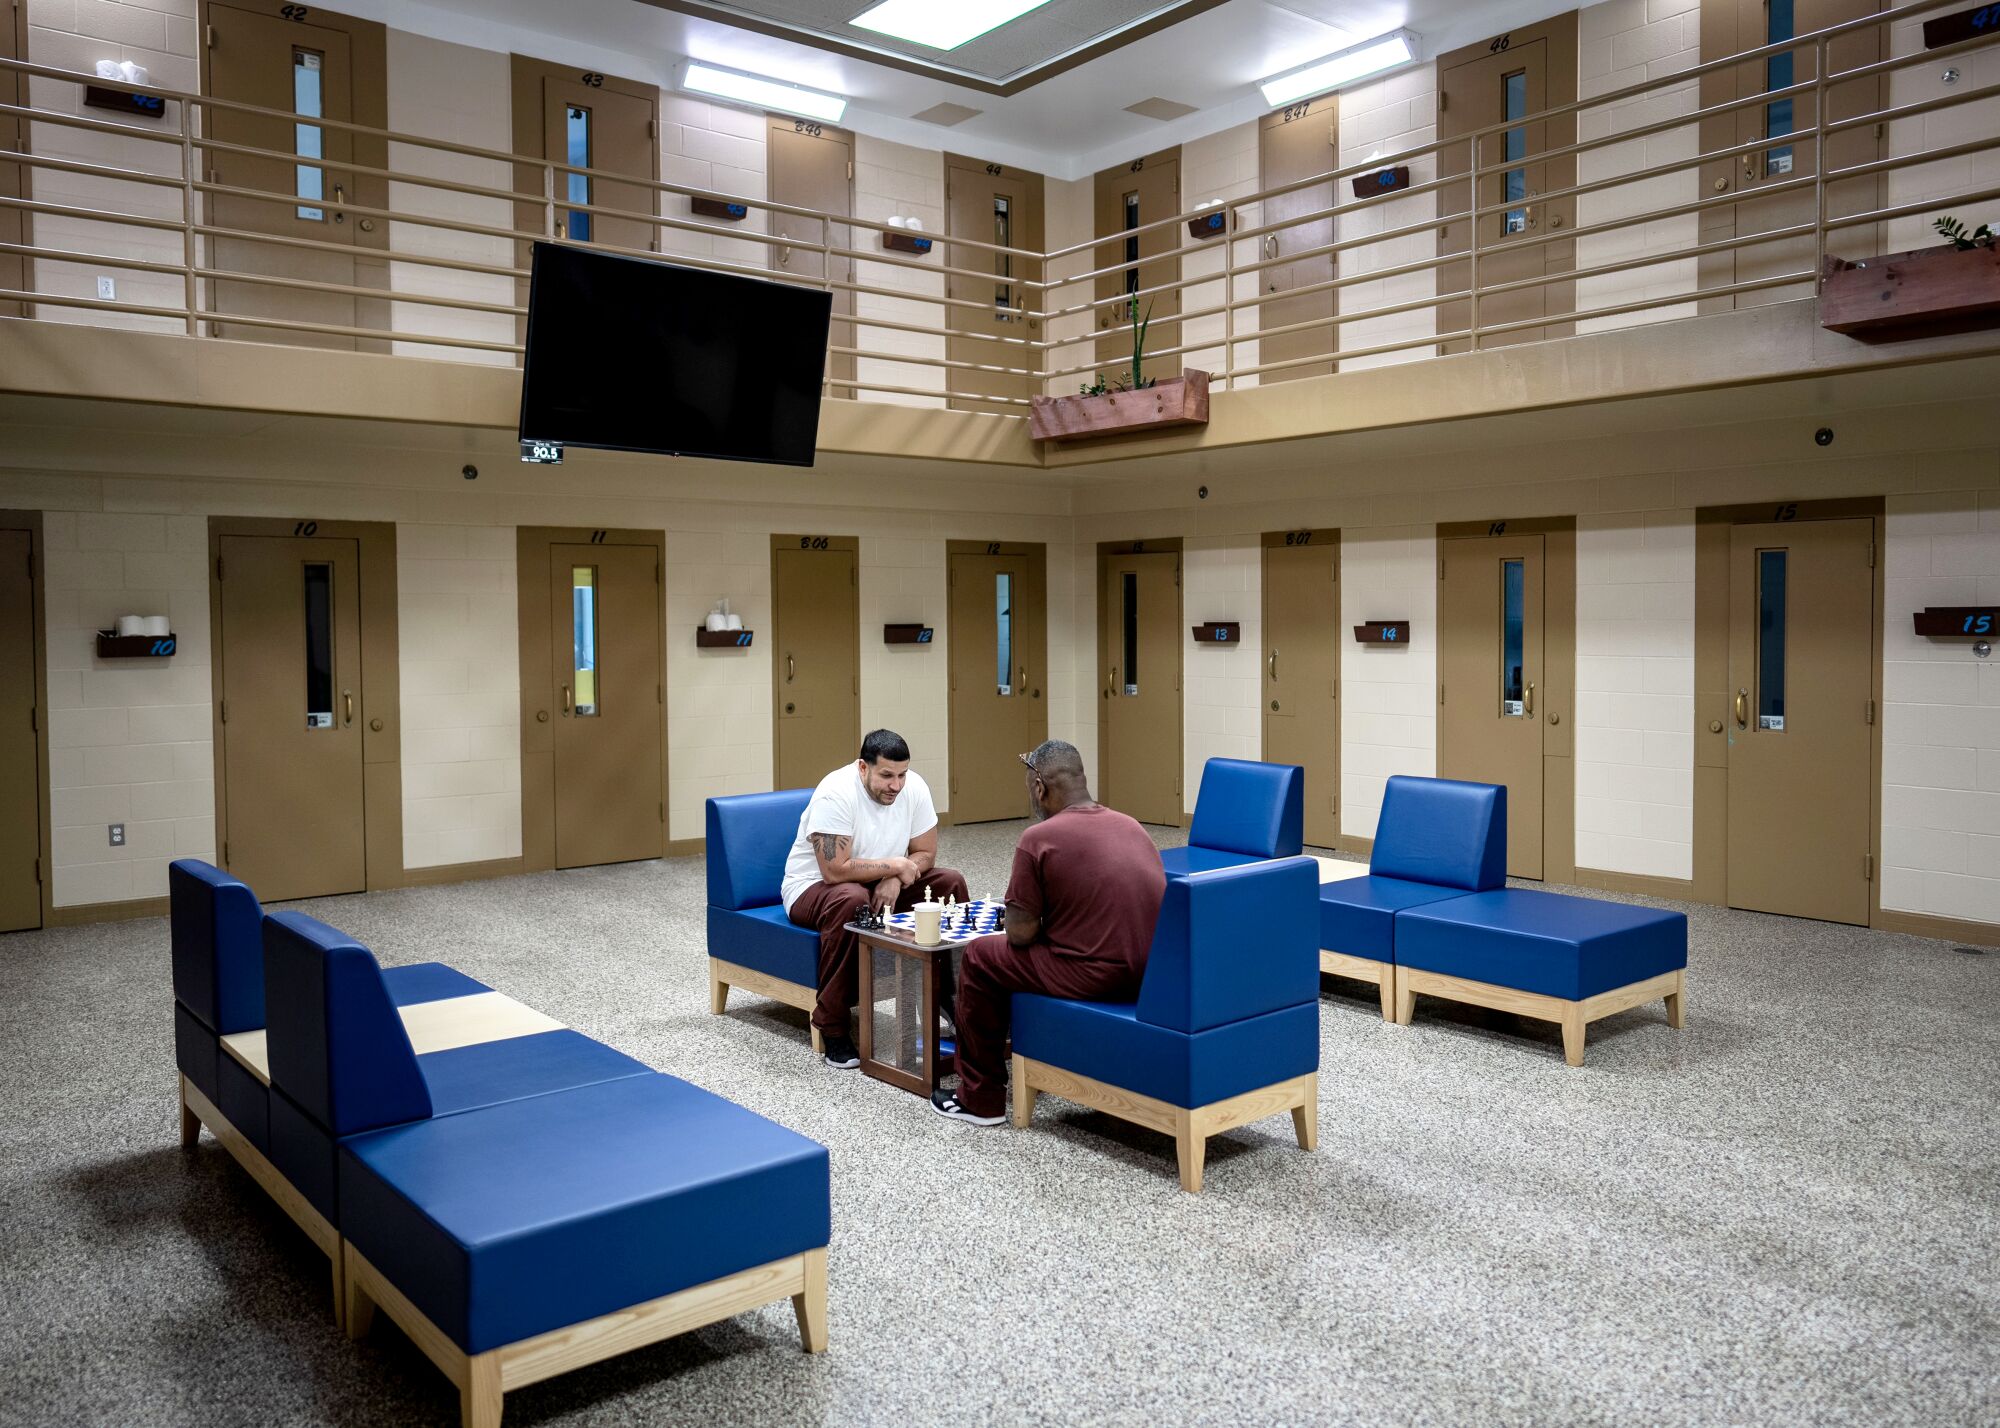 두 명의 수감자가 감옥 블록 중앙에 앉아 체스를 두었습니다.  셀유닛 2층 난간에는 TV가 설치되어 있다.